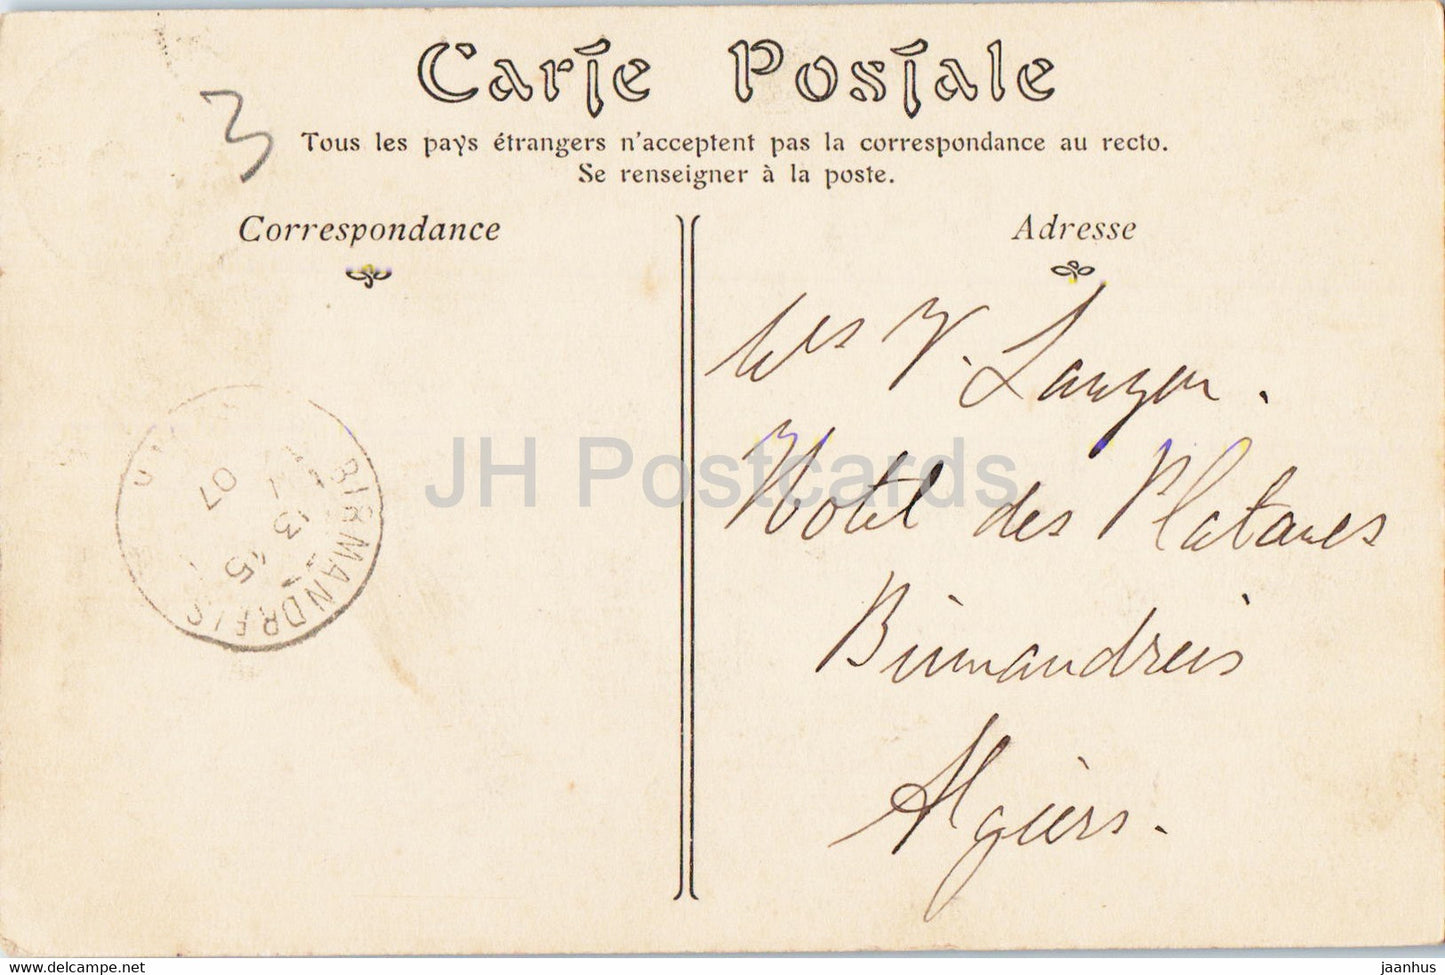 La Glaciere - L'Avenue des Chataigniers - 79 - carte postale ancienne - 1907 - Algérie - oblitéré